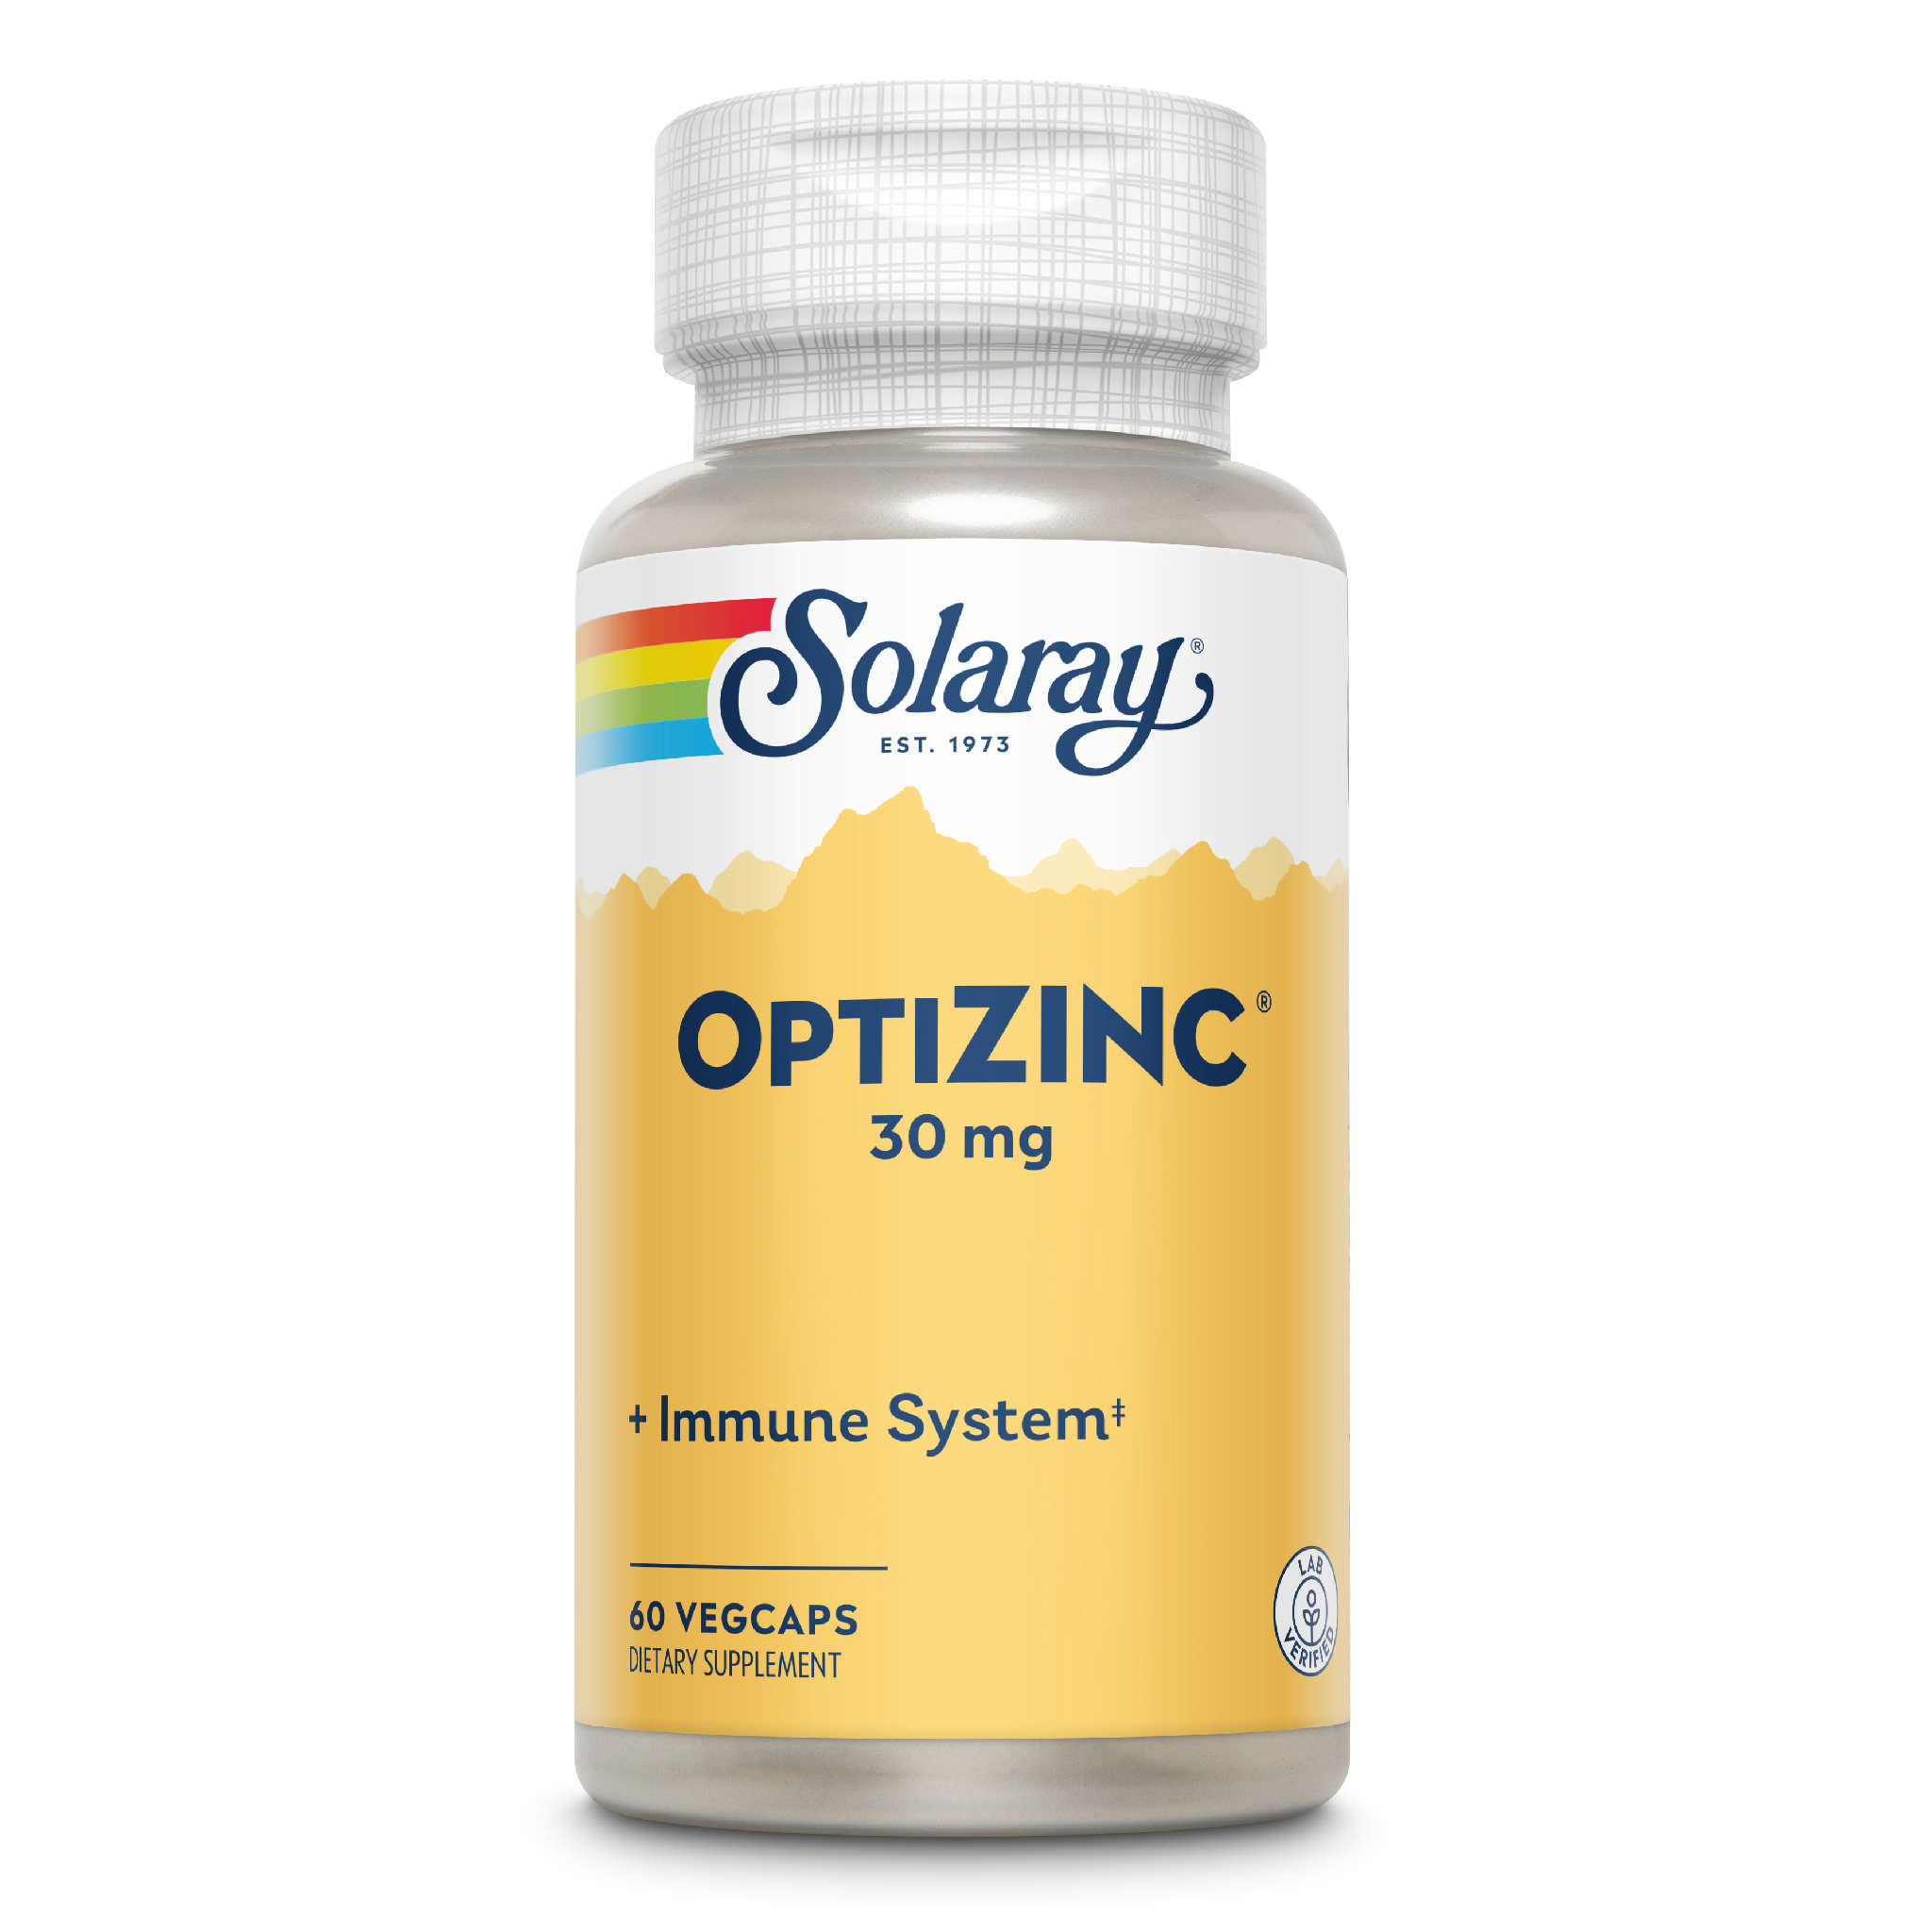 Solaray - Opti Zinc 30 mg